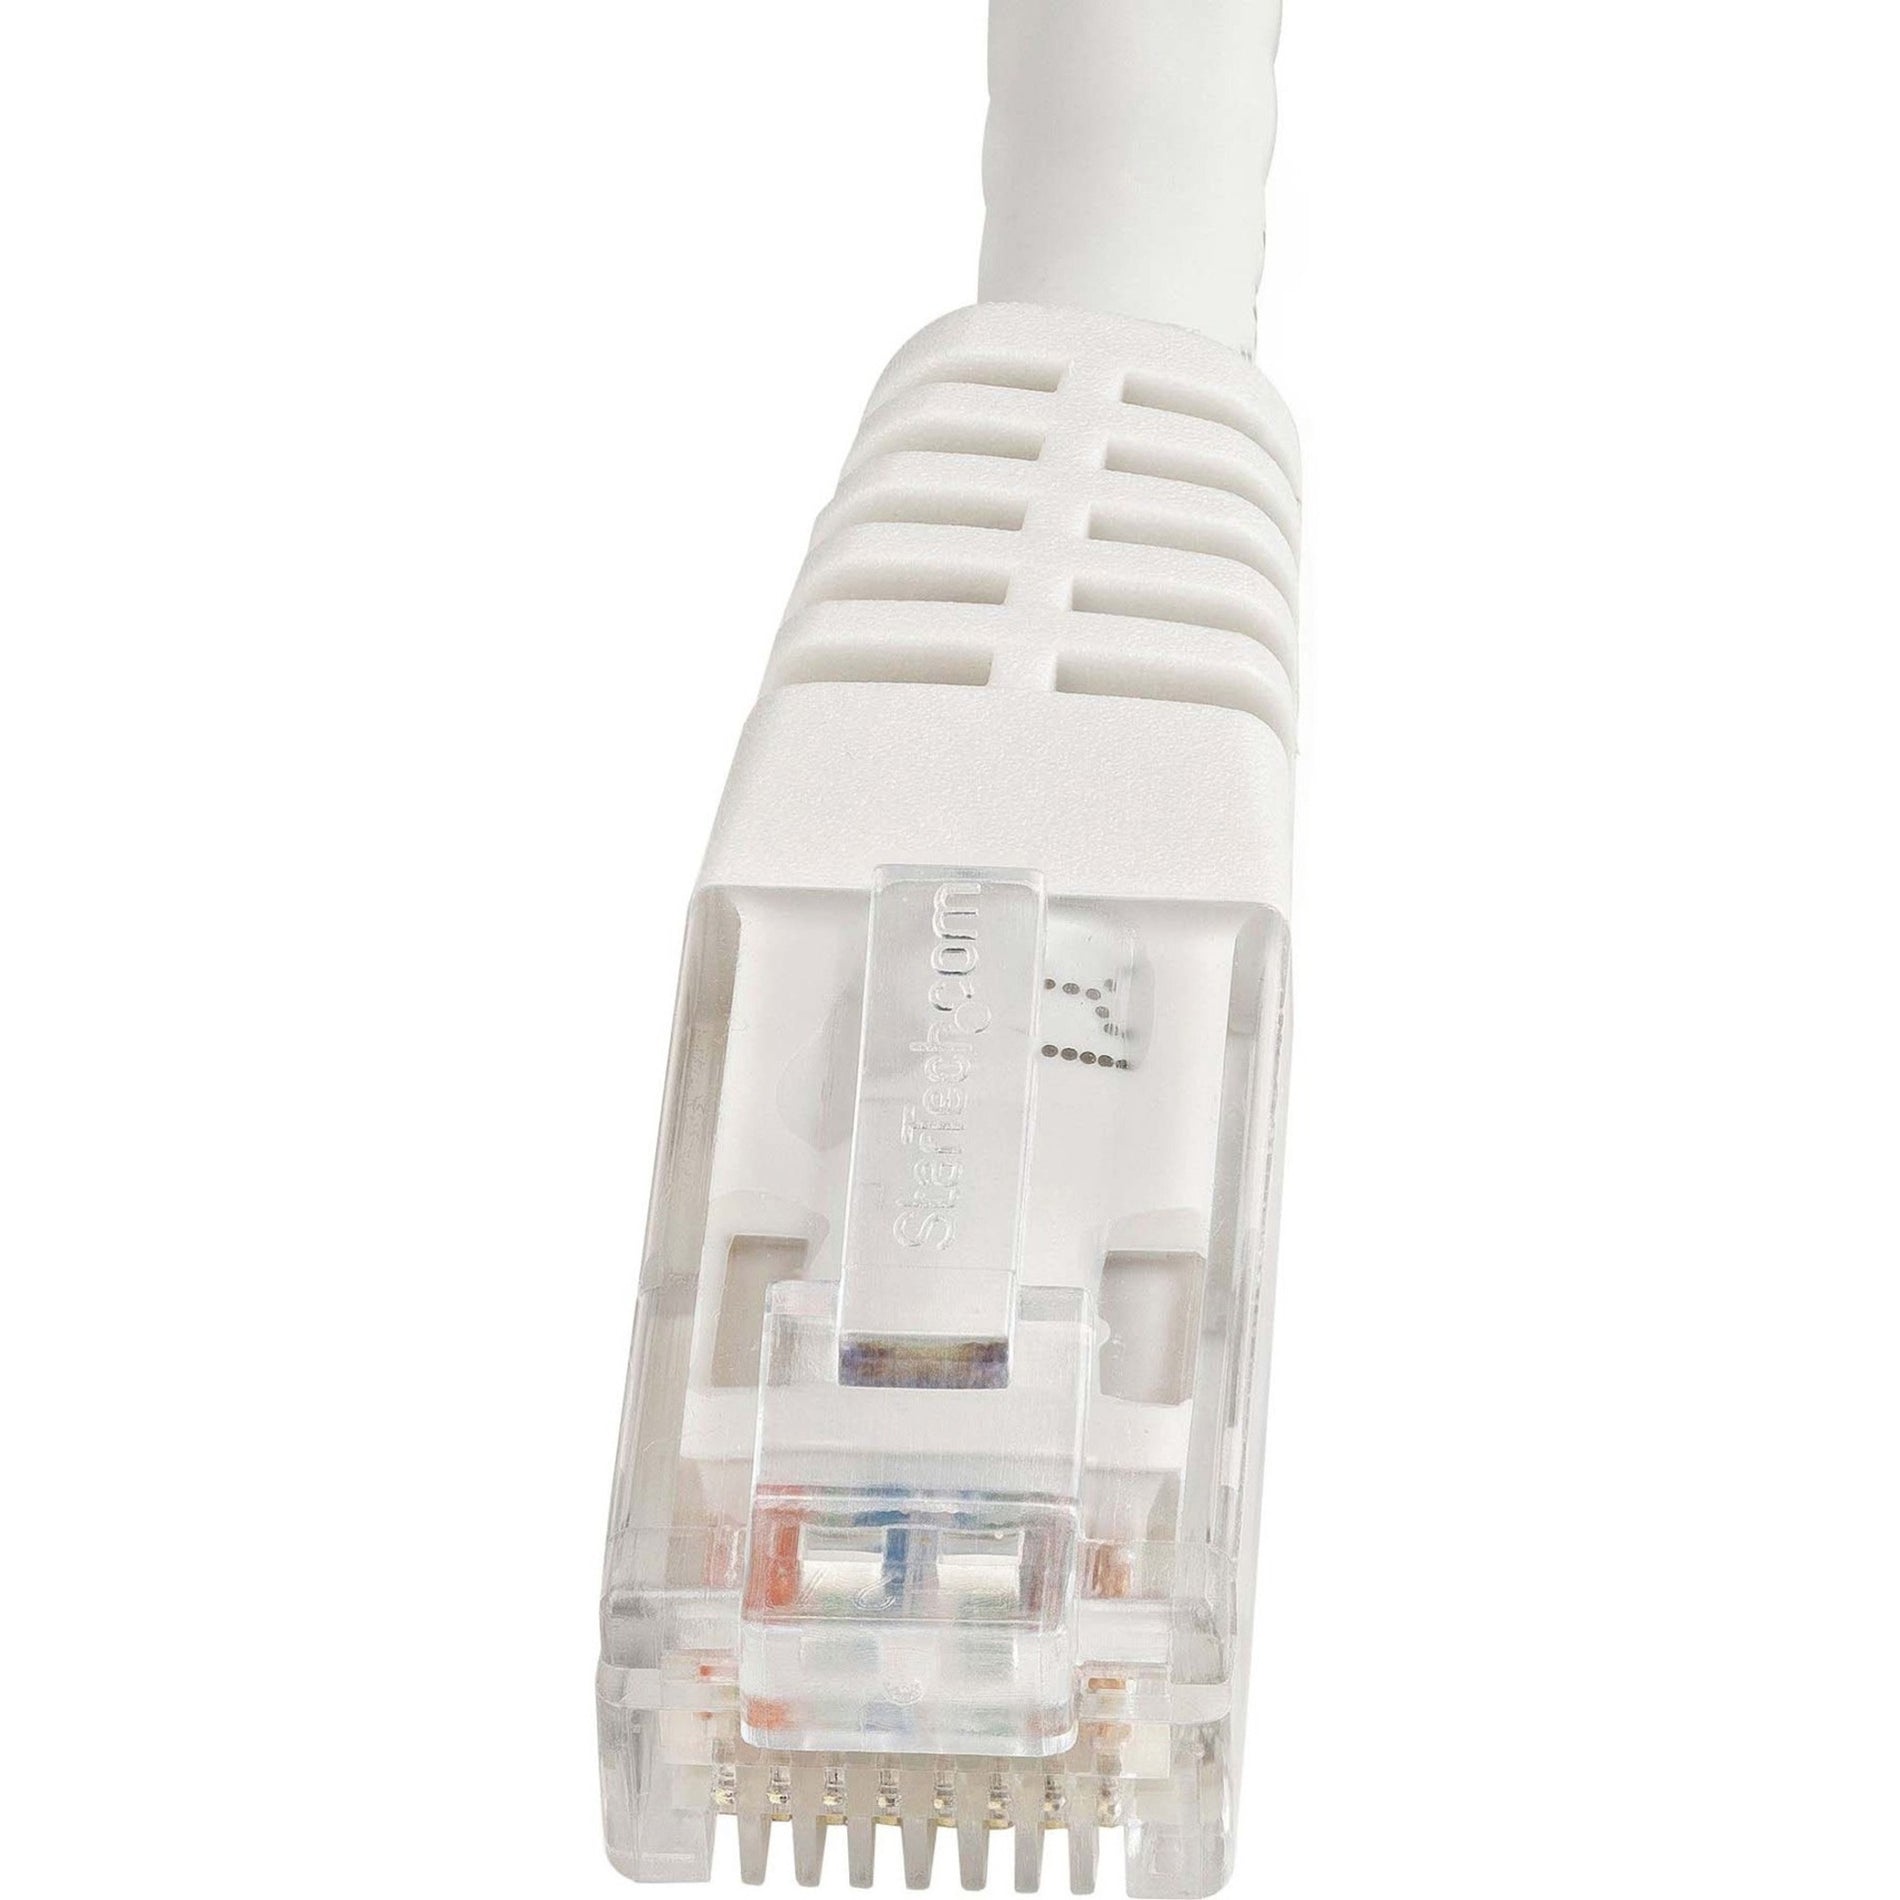 Marca: StarTech.com Cable de parche UTP Cat6 blanco de 6 pies verificado por ETL velocidad de transferencia de datos de 10 Gbit/s compatible con PoE++